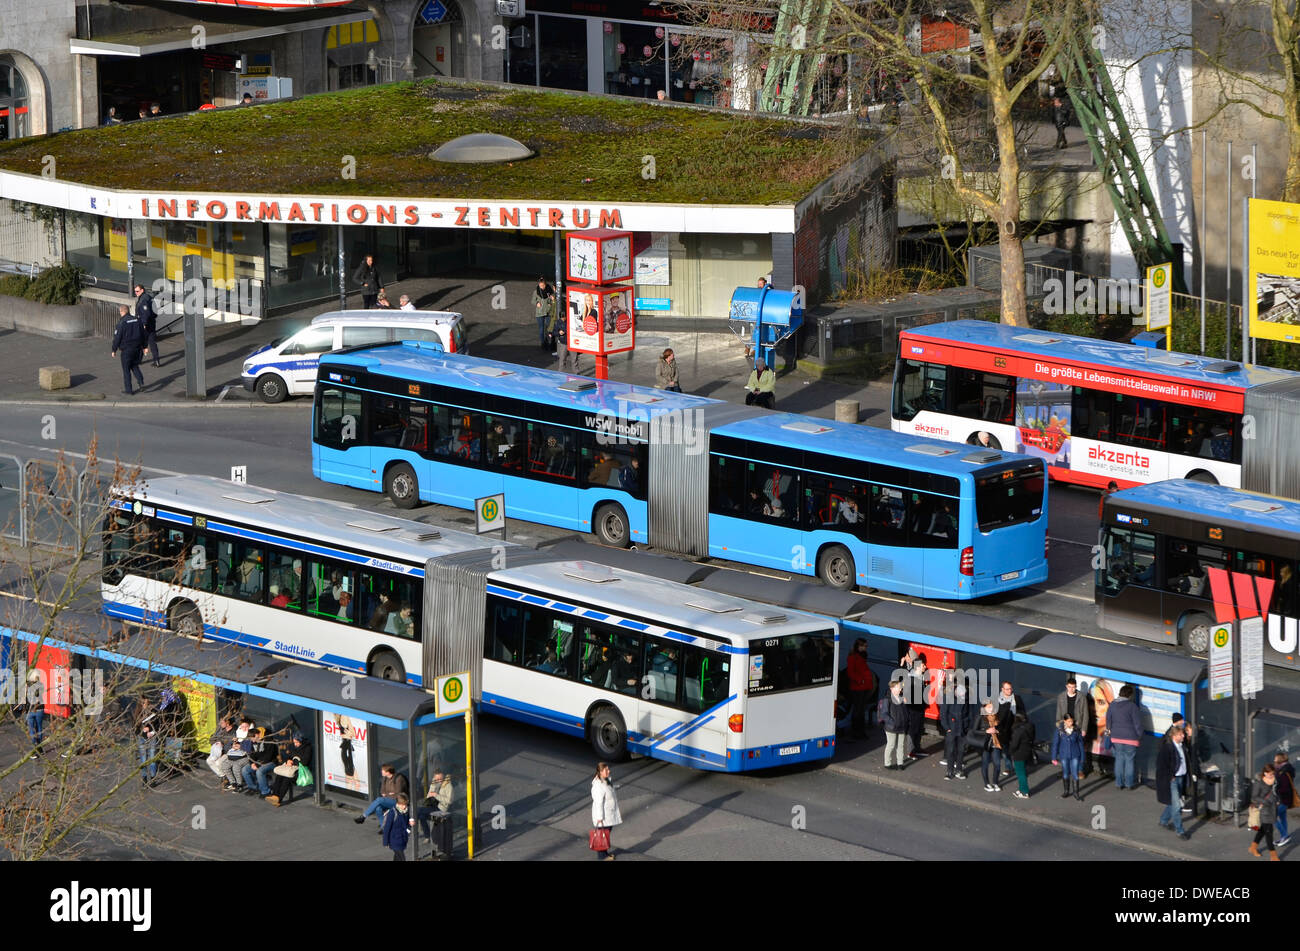 Wuppertal Zentrum mostrando la gran estación de autobuses. Wuppertal Zentrum, die die großen Busbahnhof. Foto de stock